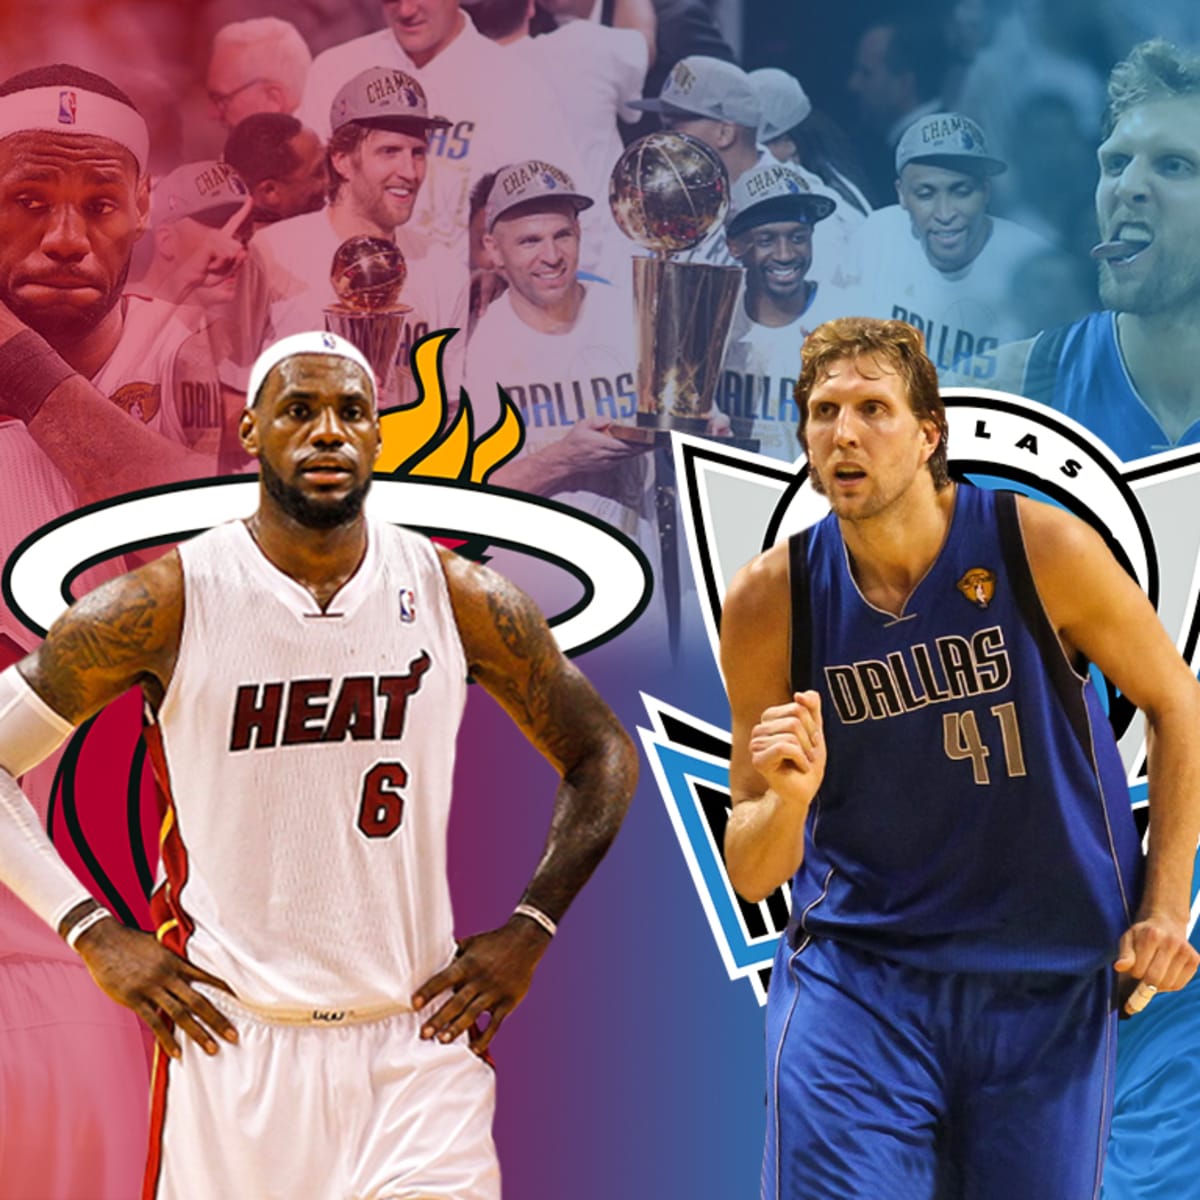 2011 NBA Finals: Mavericks vs. Heat in 13 minutes